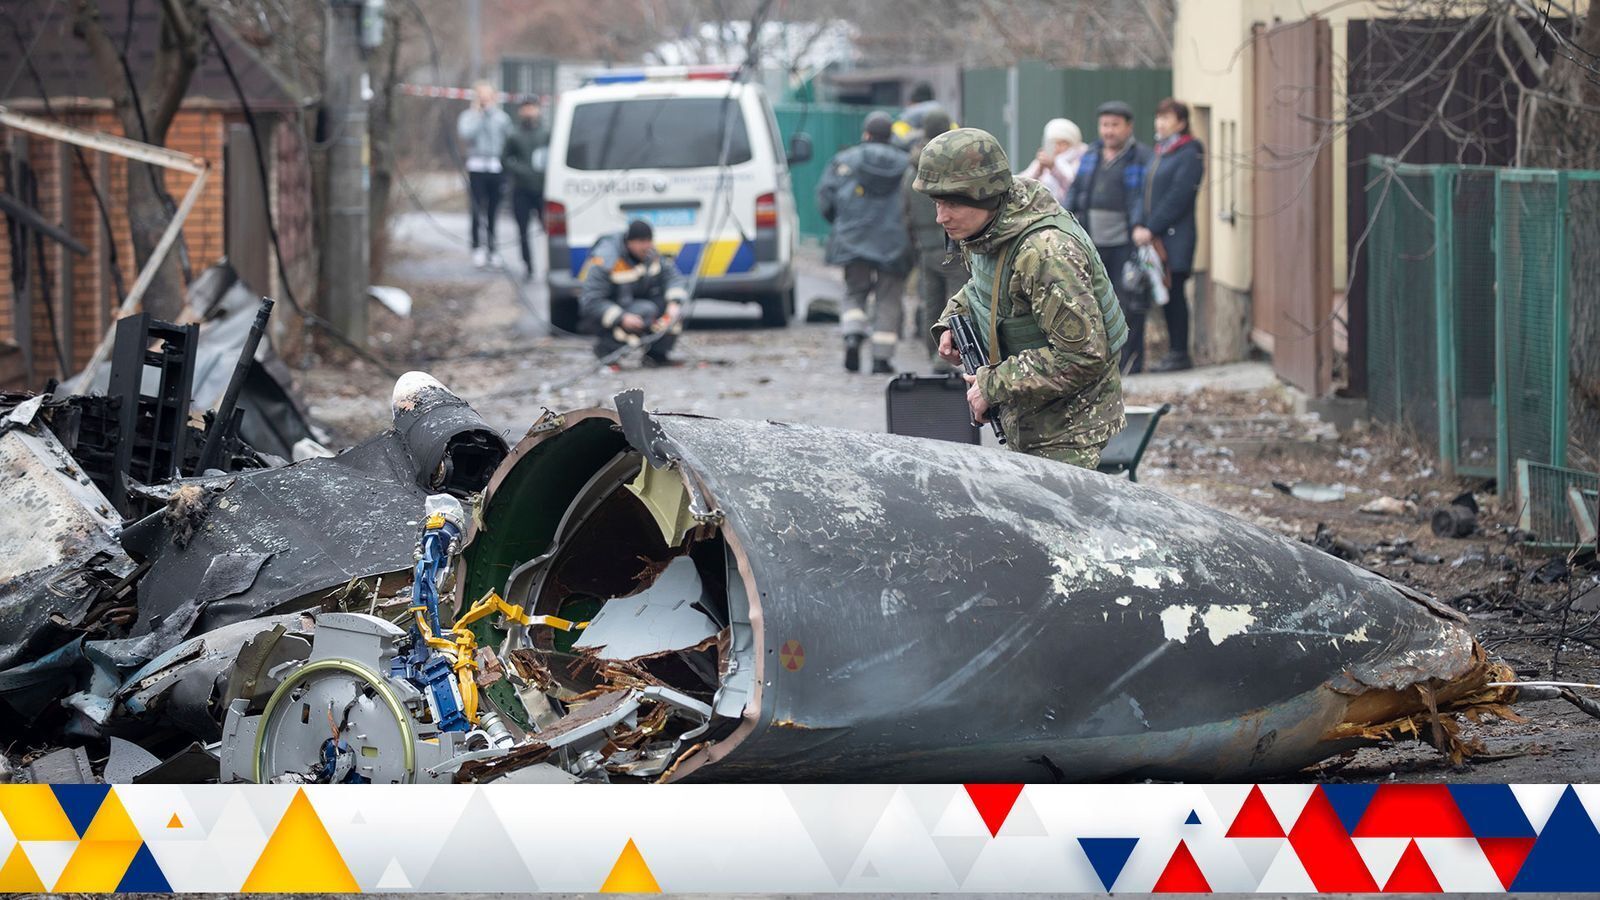 Россия - Украина сегодня, последние новости 26 февраля 2022: война идет или нет, обзор событий в Донбассе, обстановка на Украине сейчас, 26.02.2022